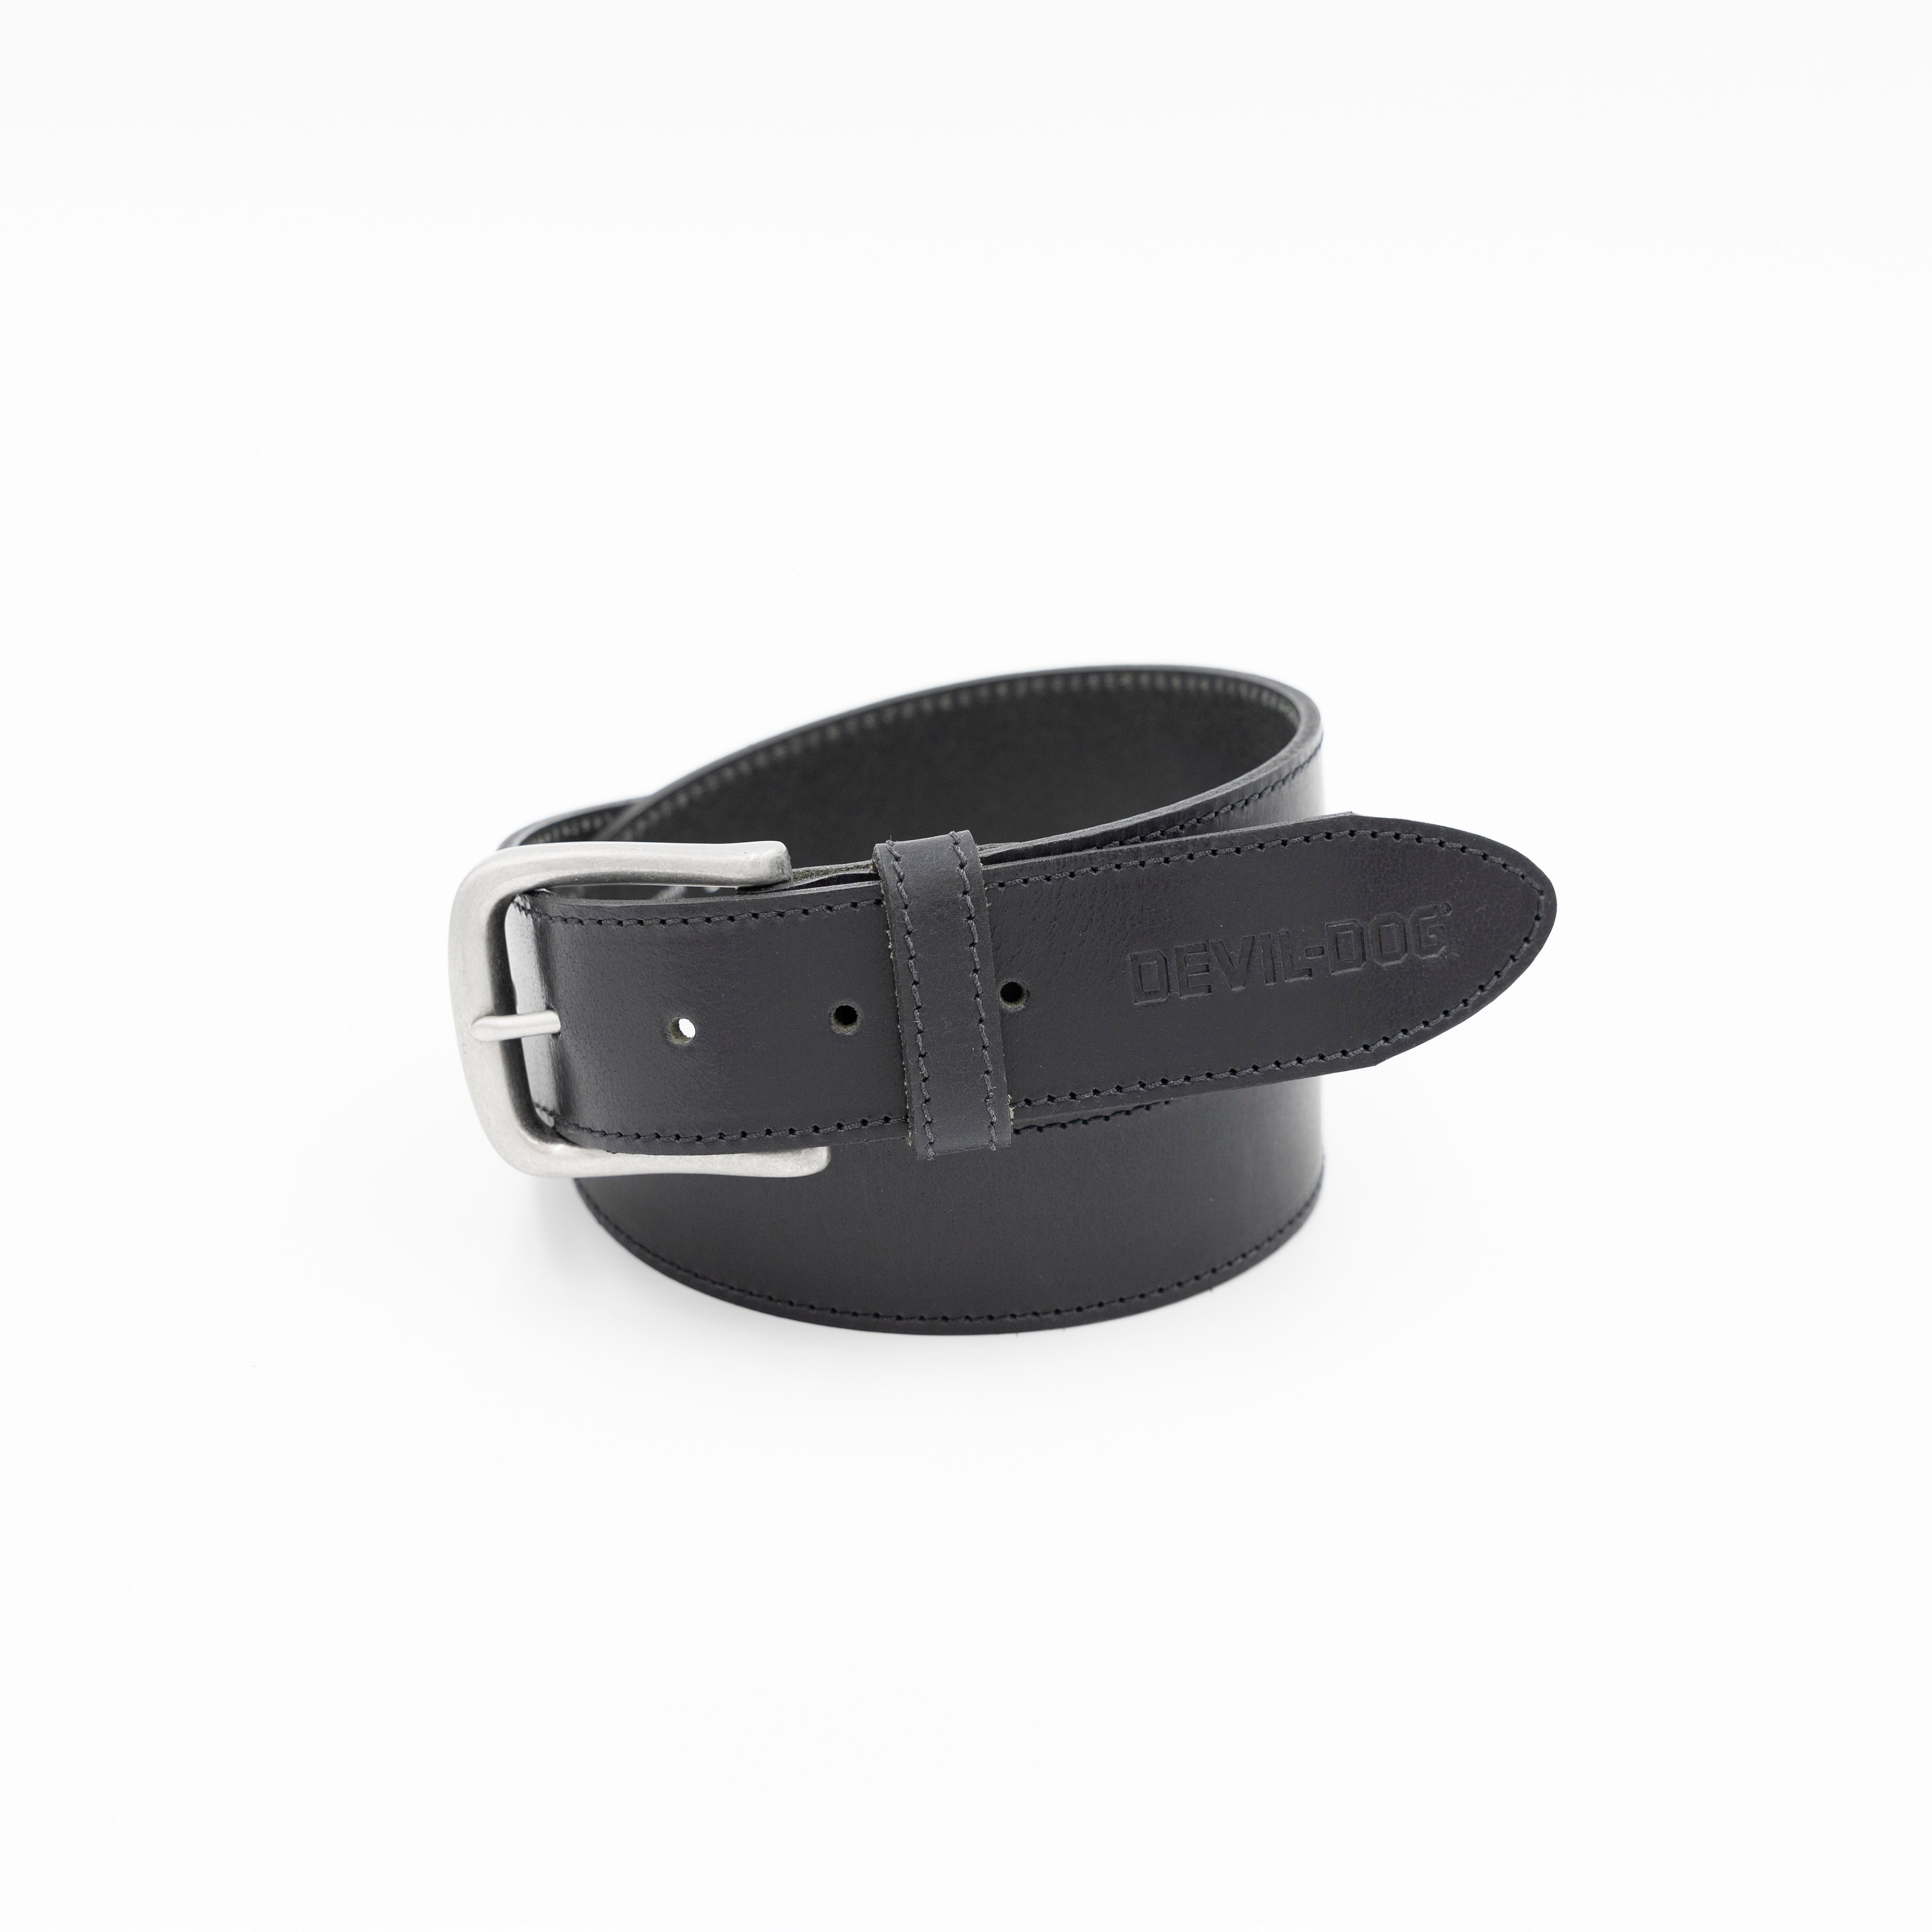 DEVIL-DOG® Leather Belt - Black with Nickel Buckle – DEVIL-DOG Dungarees